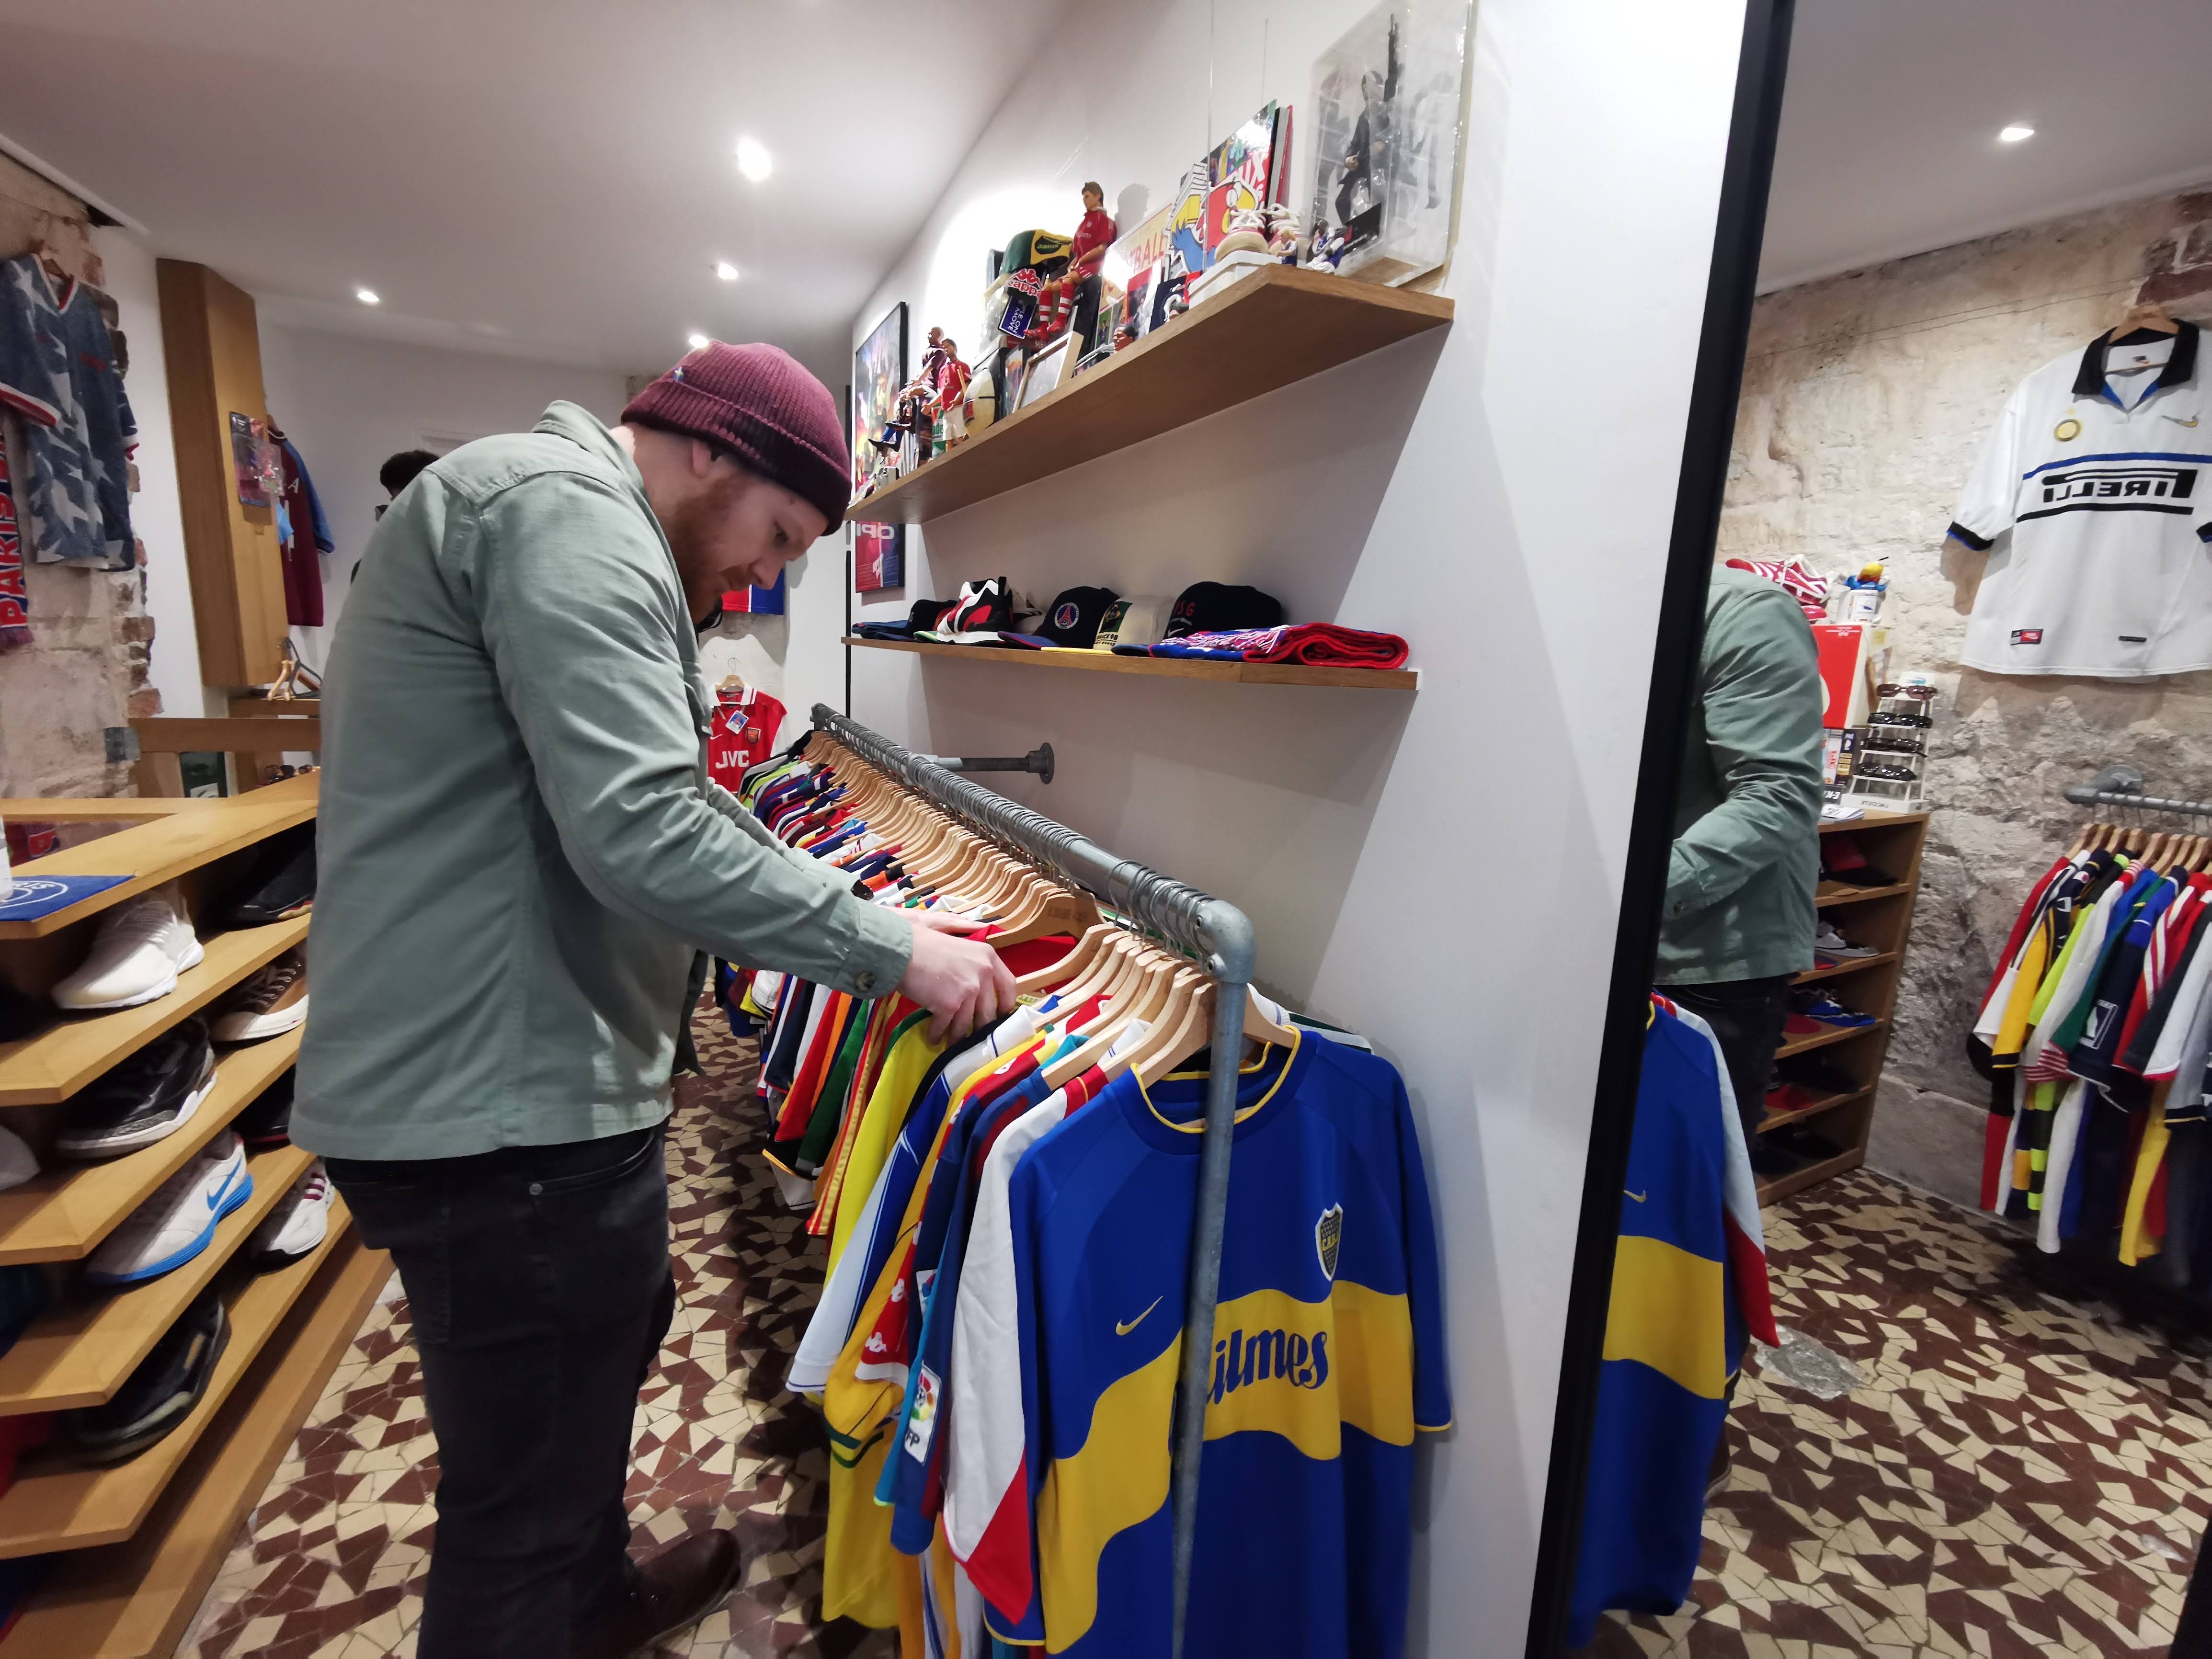 Matt Ketchell visiting LineUp a vintage football shirt shop in Paris